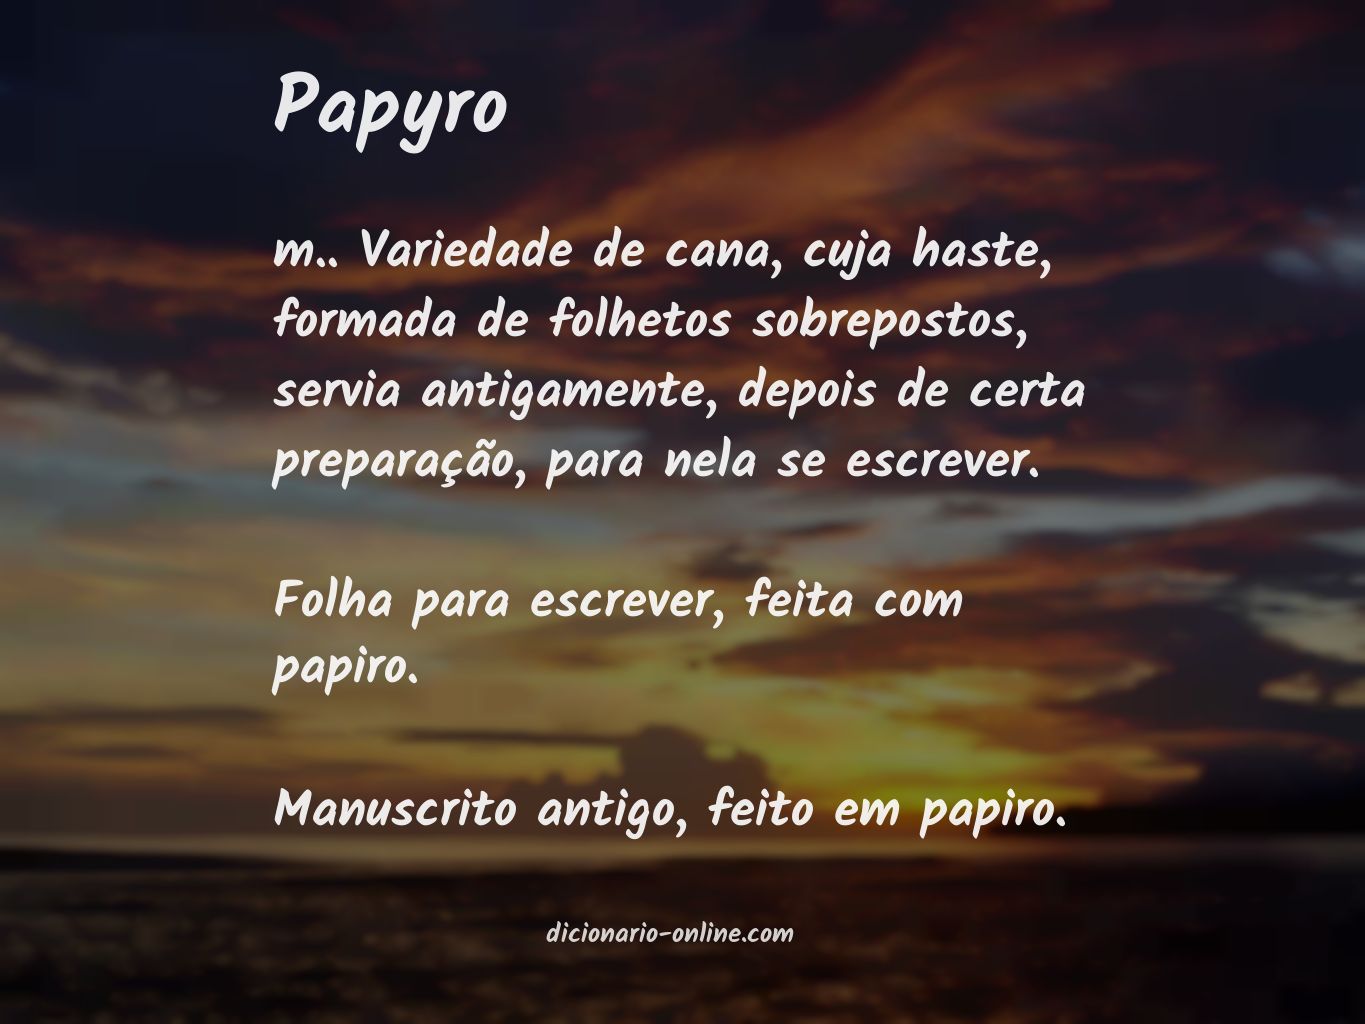 Significado de papyro